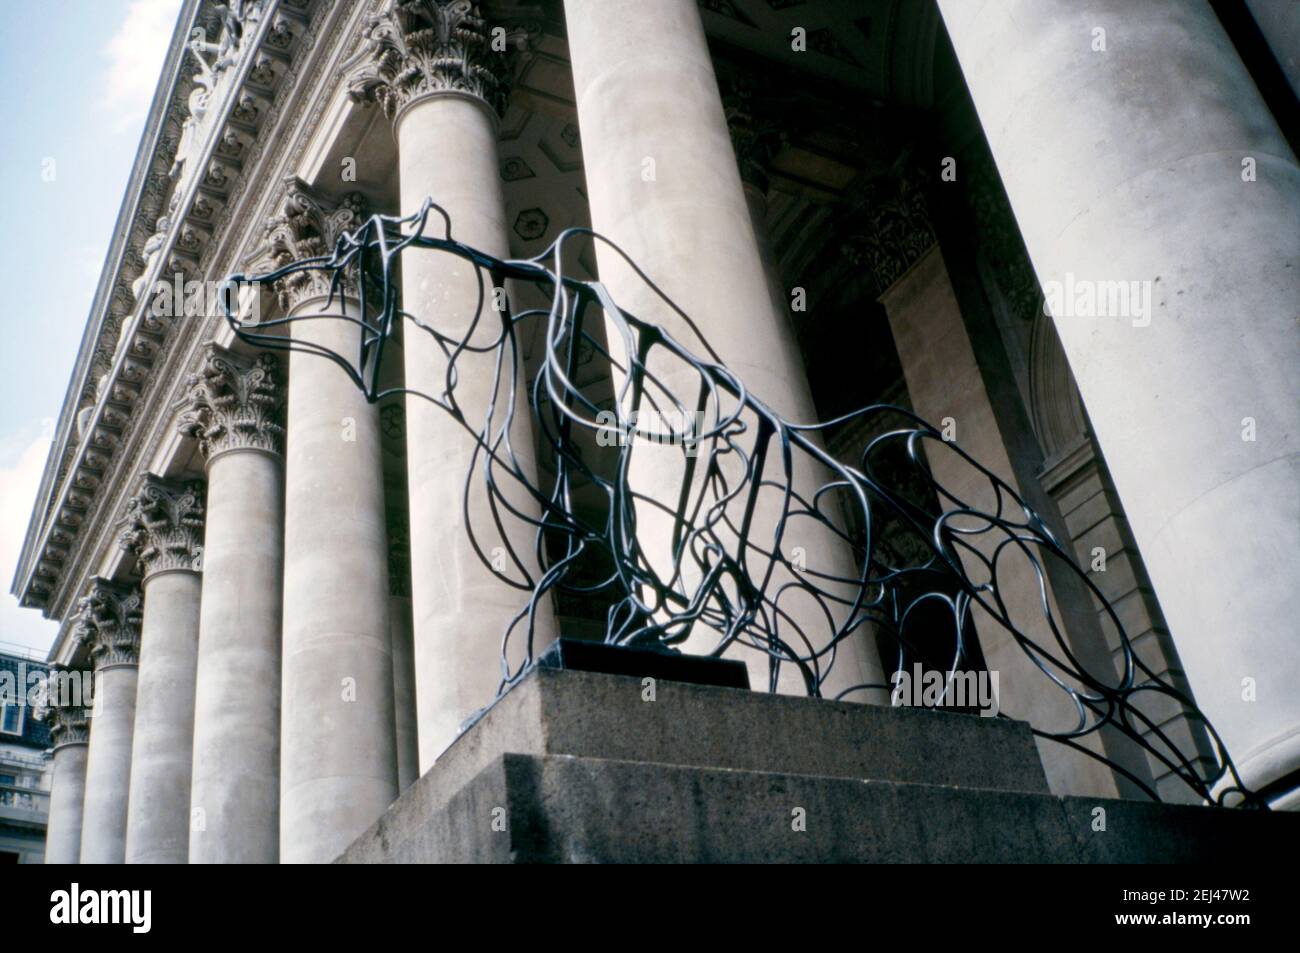 Eine Stahlskulptur von 1993, Marcel Baettigs ‘Bär’, in der City of London, England, UK 1993. Dies war Teil der ‘Art in the City’ von 1993 und zielte darauf ab, Skulpturen zwischen den Grünflächen und der unverwechselbaren Architektur der City of London zu setzen. Sowohl die Worte Bull als auch Bear sind Worte, die eng mit dem Londoner Aktienmarkt verbunden sind. Marcel Baettig gründete ‘das Sozialunternehmen 1995 Bow Arts’ und schuf damit ein nachhaltiges Modell zur Unterstützung von Künstlern und Kunstvermittlung. Stockfoto